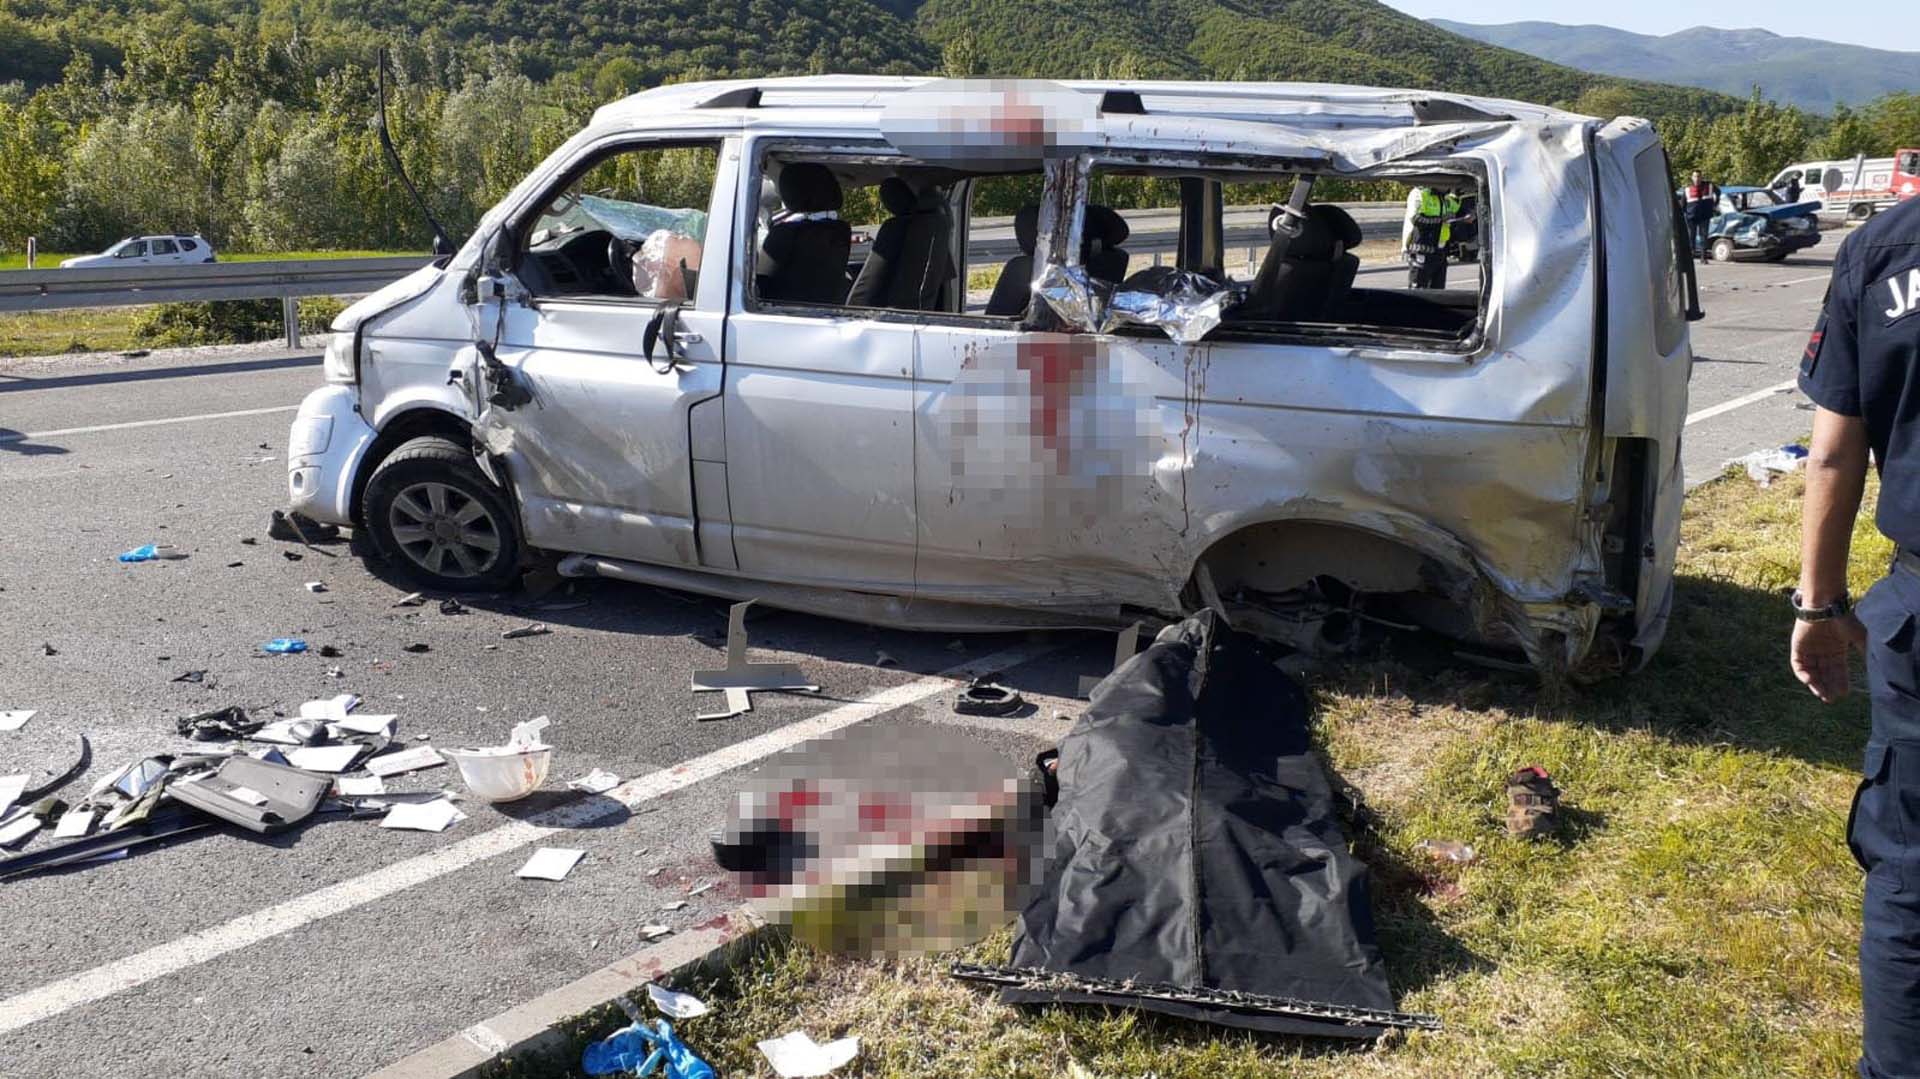 Tokat Niksar'da feci kaza! İşçileri taşıyan minibüs otomobille çarpıştı! 2 ölü, 12 yaralı 